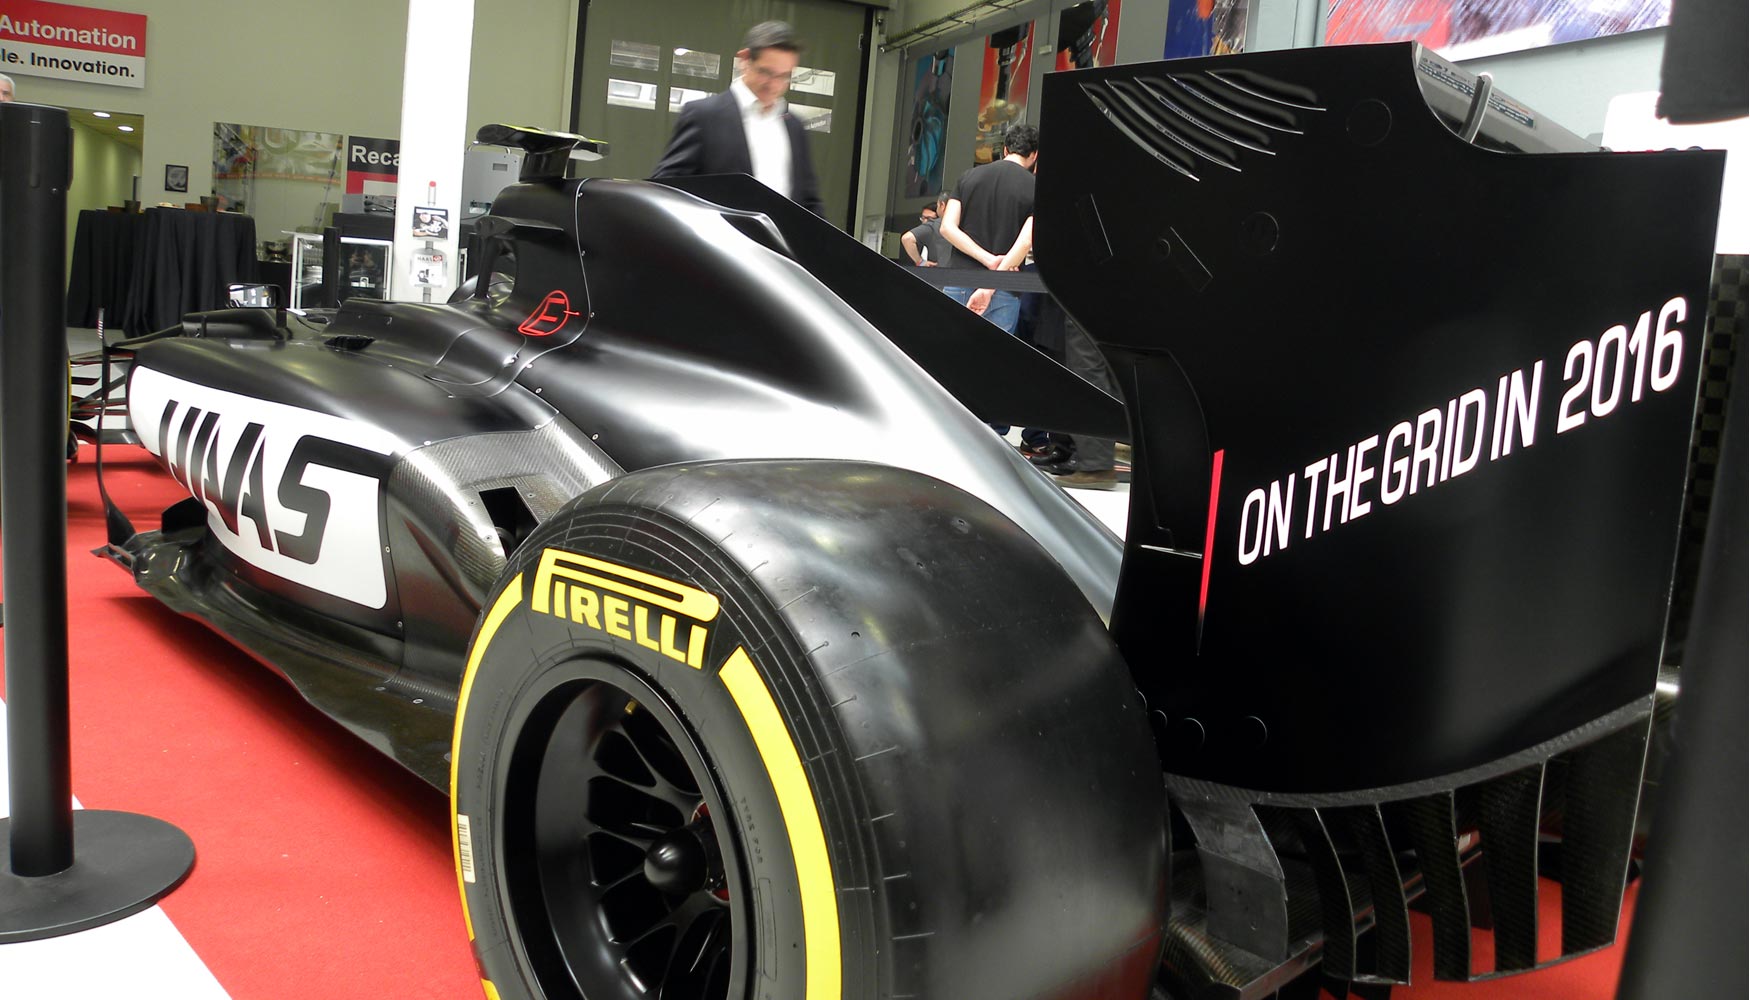 Haas F1 Team debutar, si se cumplen todas las previsiones, en el Campeonato del Mundo FIA de Frmula 1 en 2016